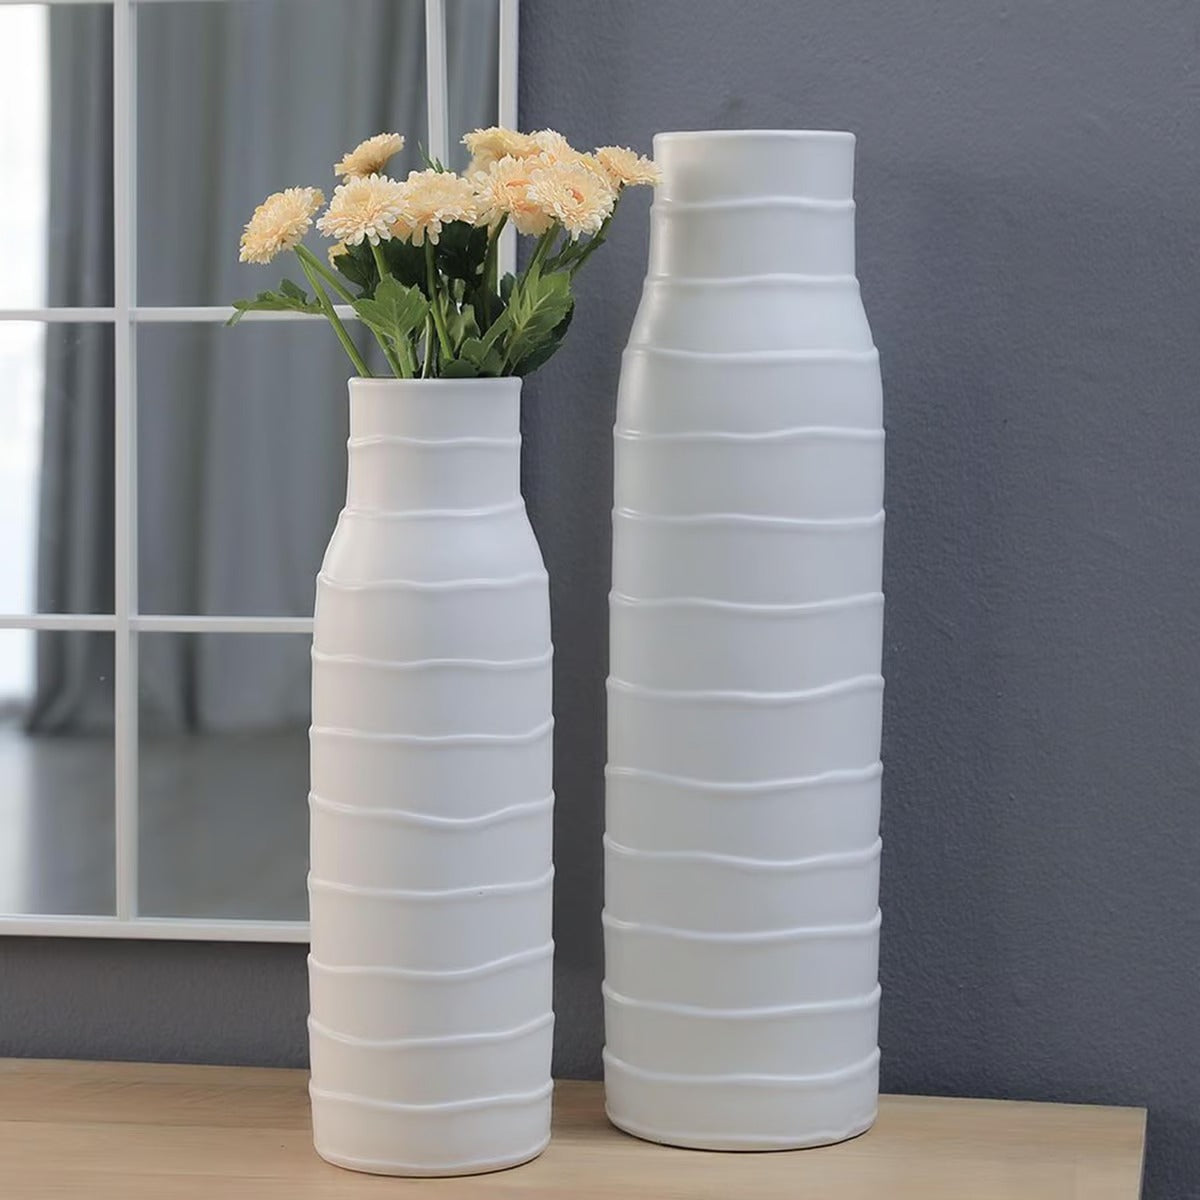 Creped Ceramic Vase 17x17x59cm-Matt White